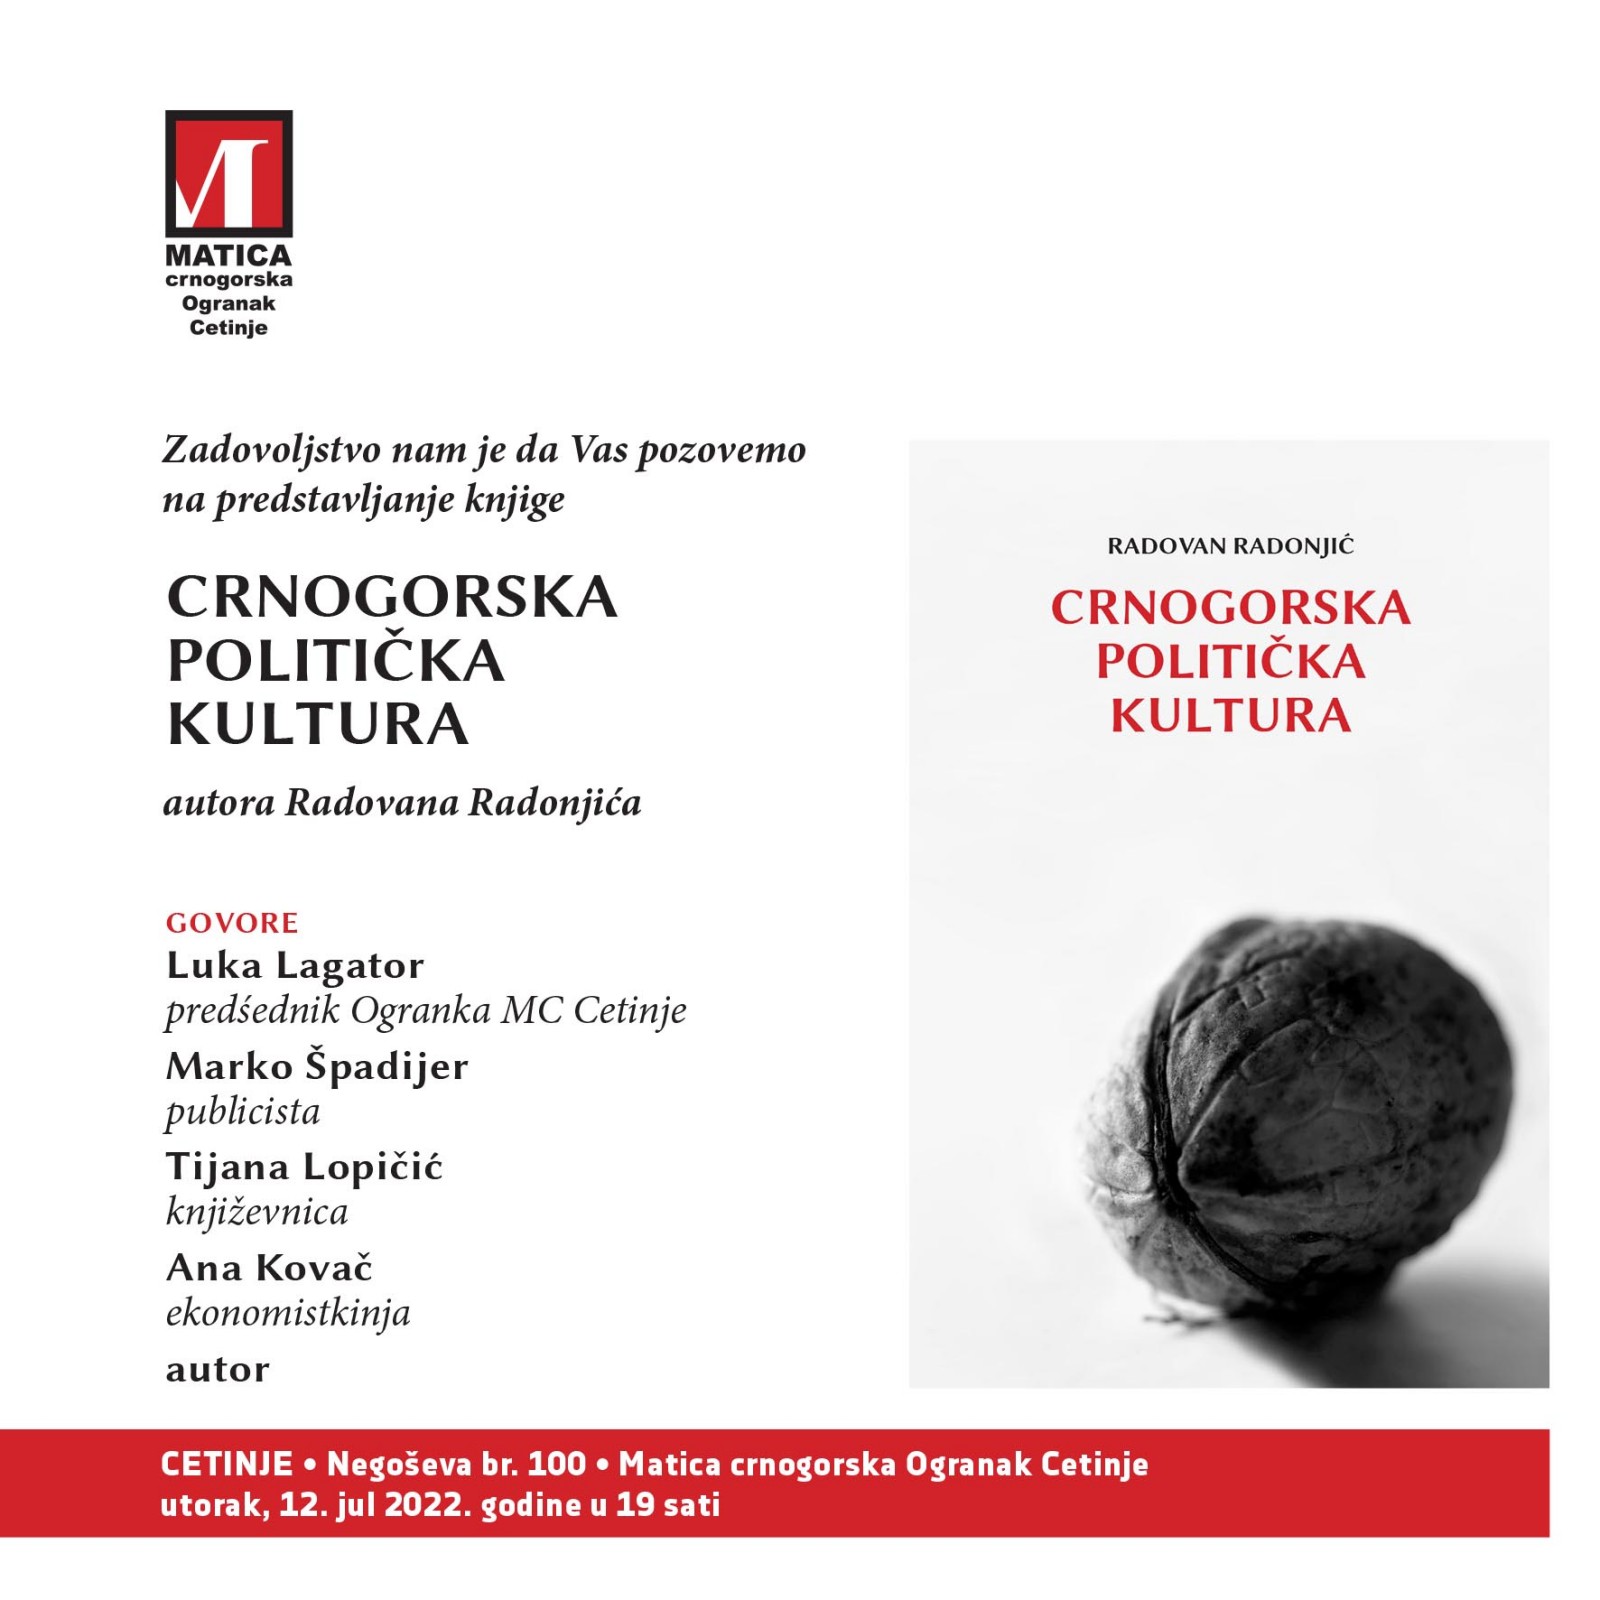 Predstavljanje knjige Radovana Radonjića Crnogorska politička kultura na Cetinju